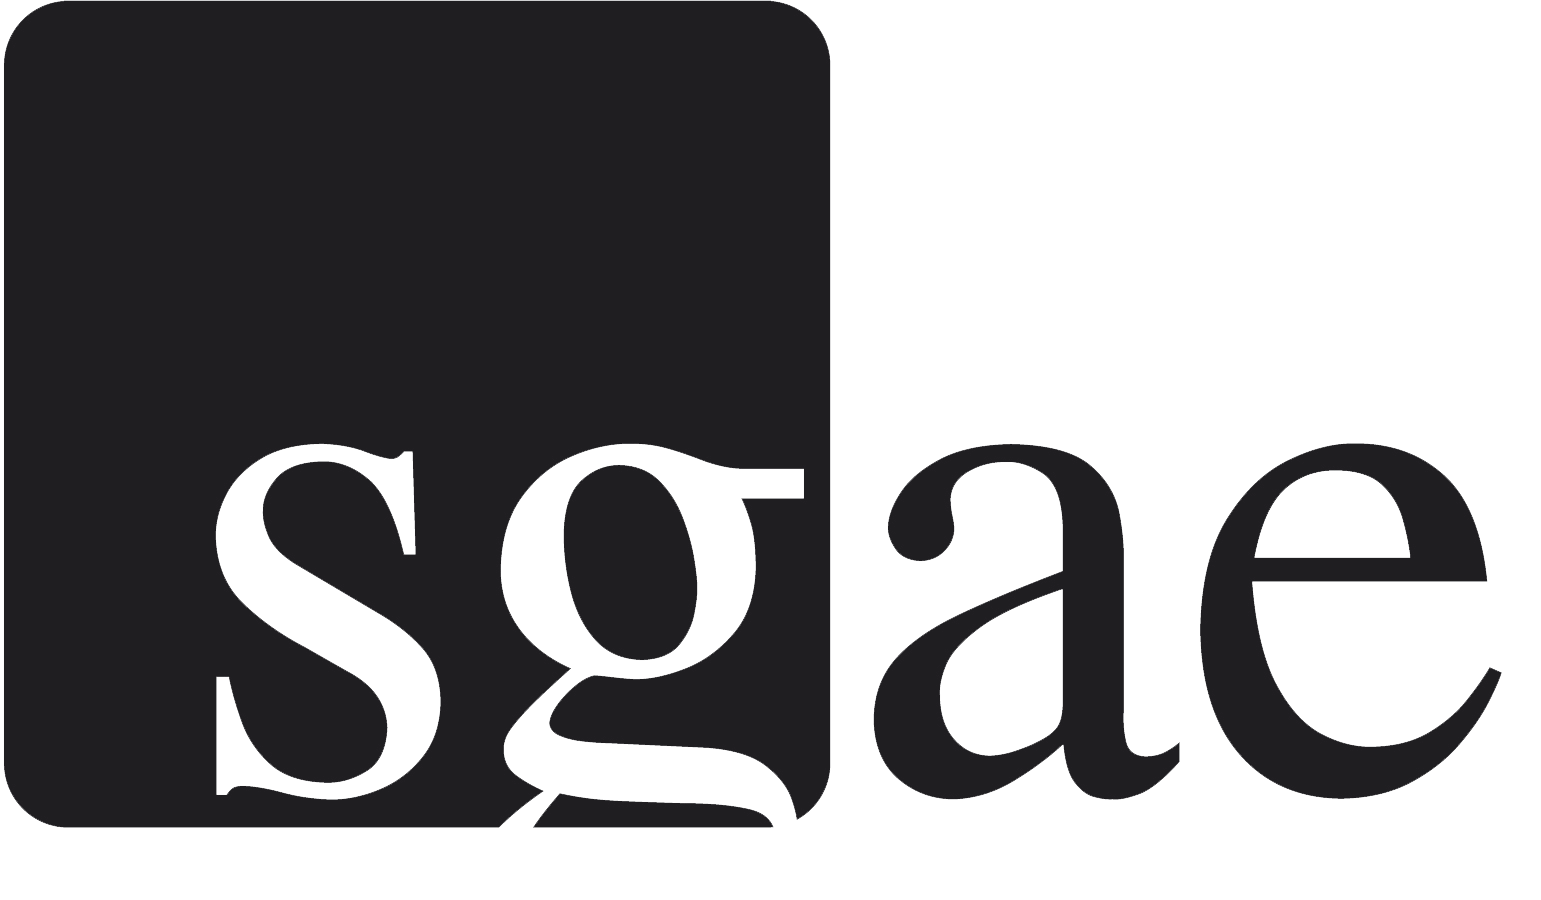 SGAE - Societat General d'Autors i Editors